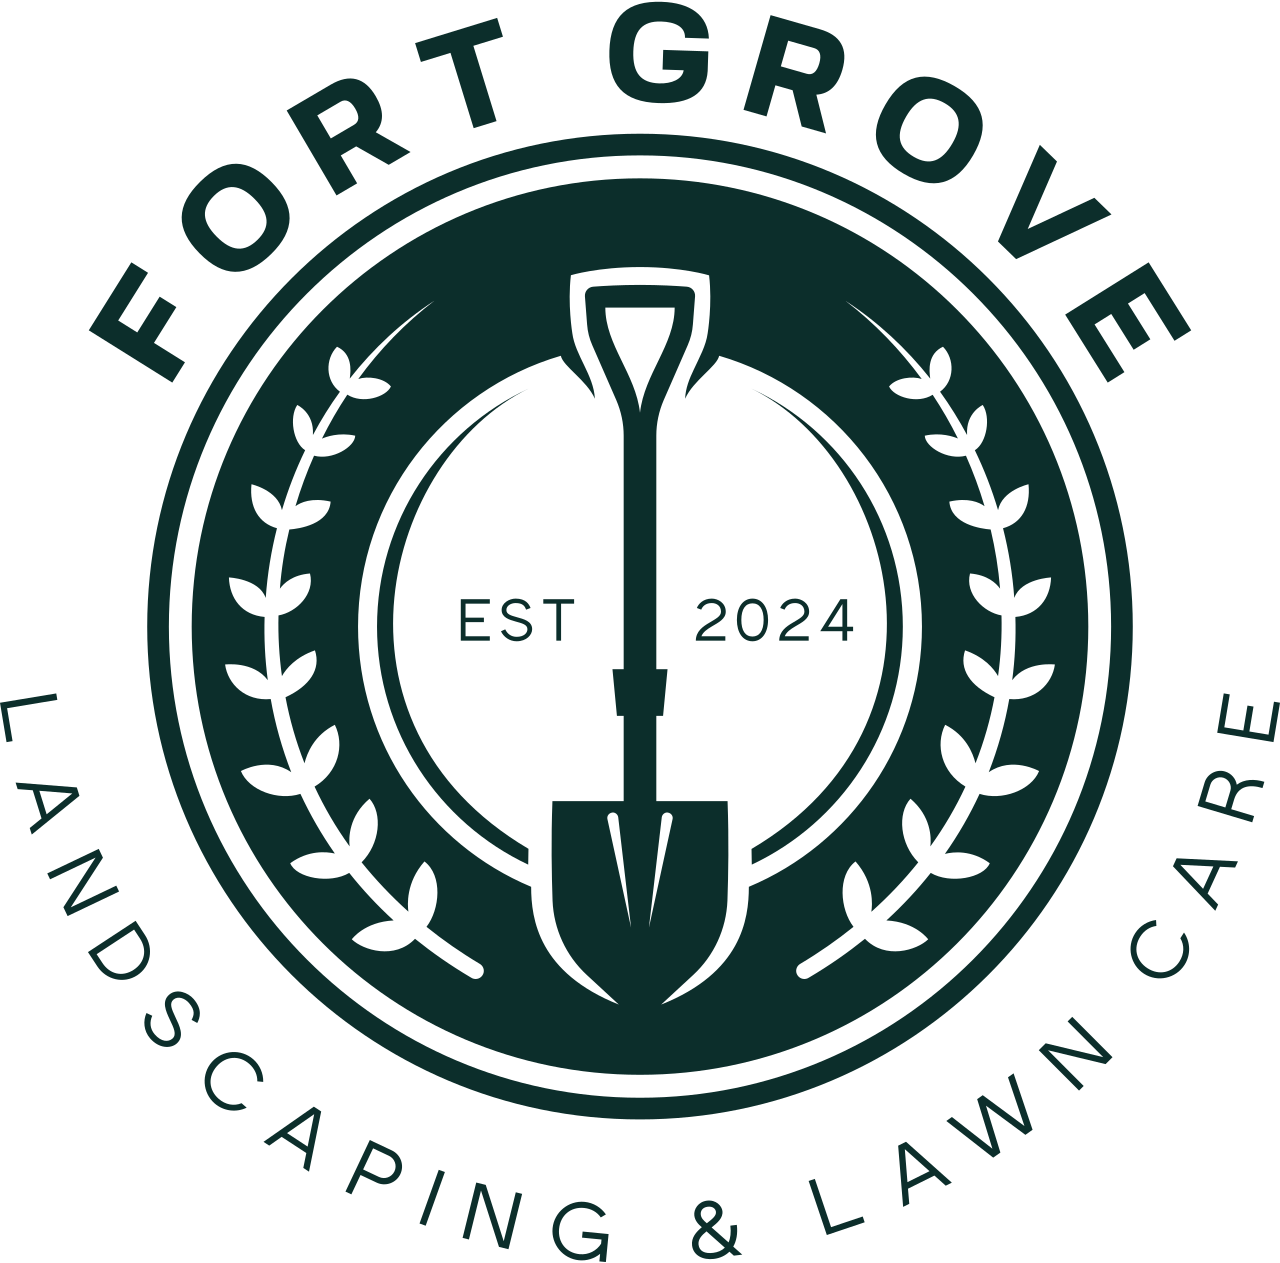 FORT GROVE's logo